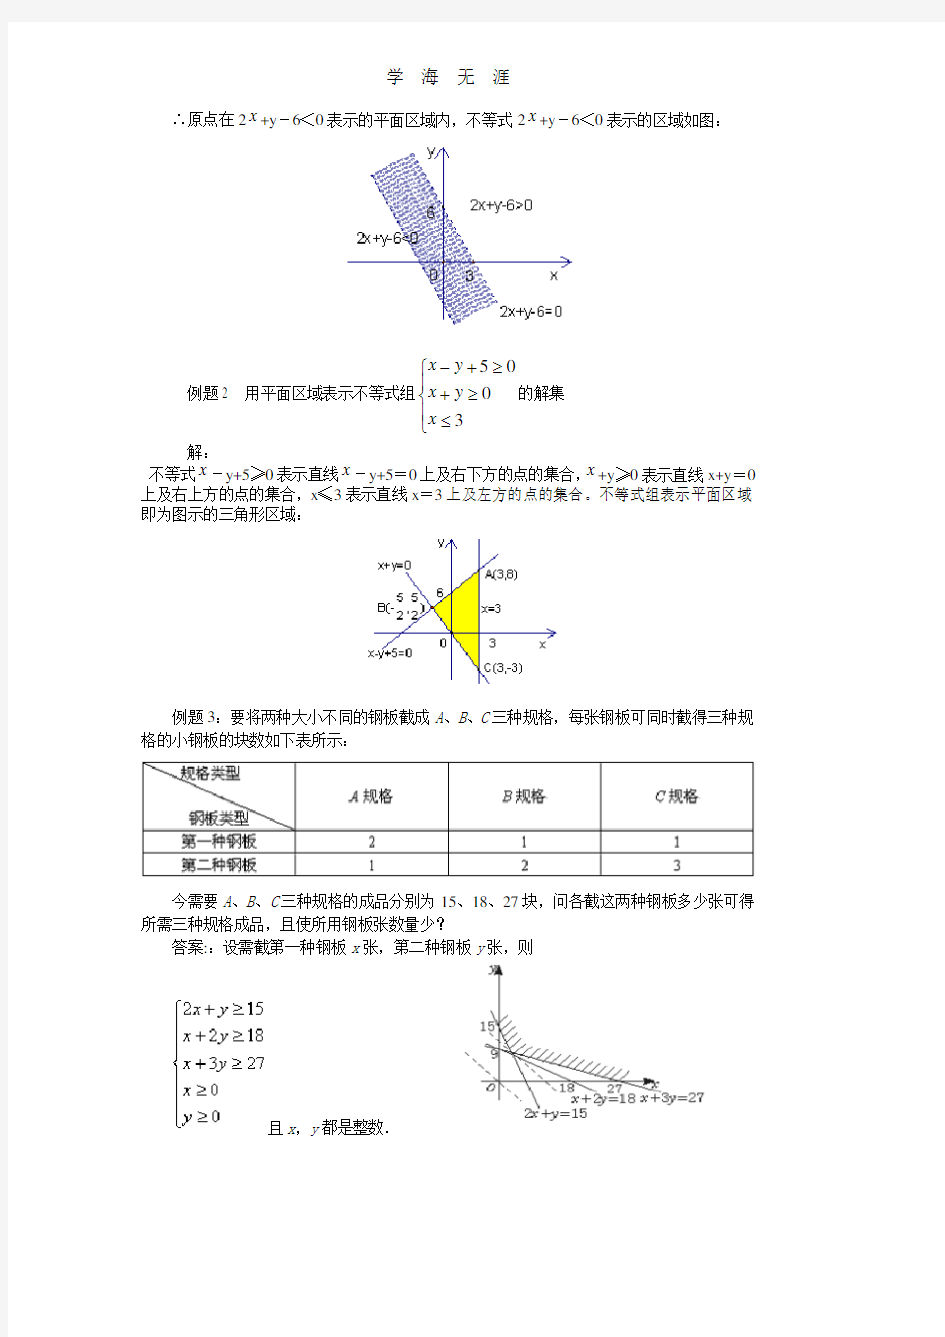 3.3一元二次不等式(组)与简单线性规划问题.pdf